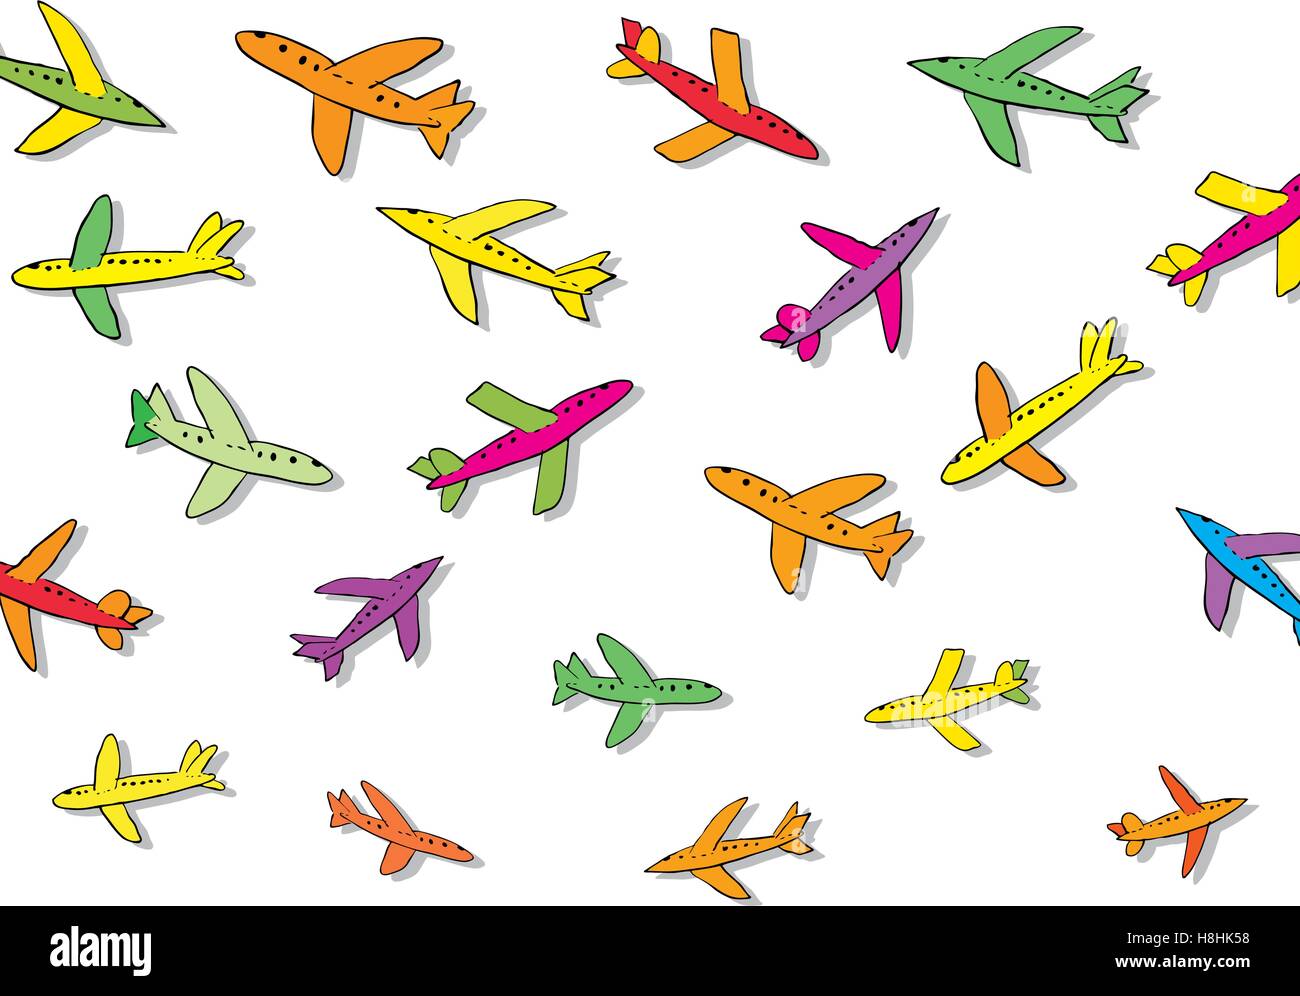 Самолетики на распечатку цветные